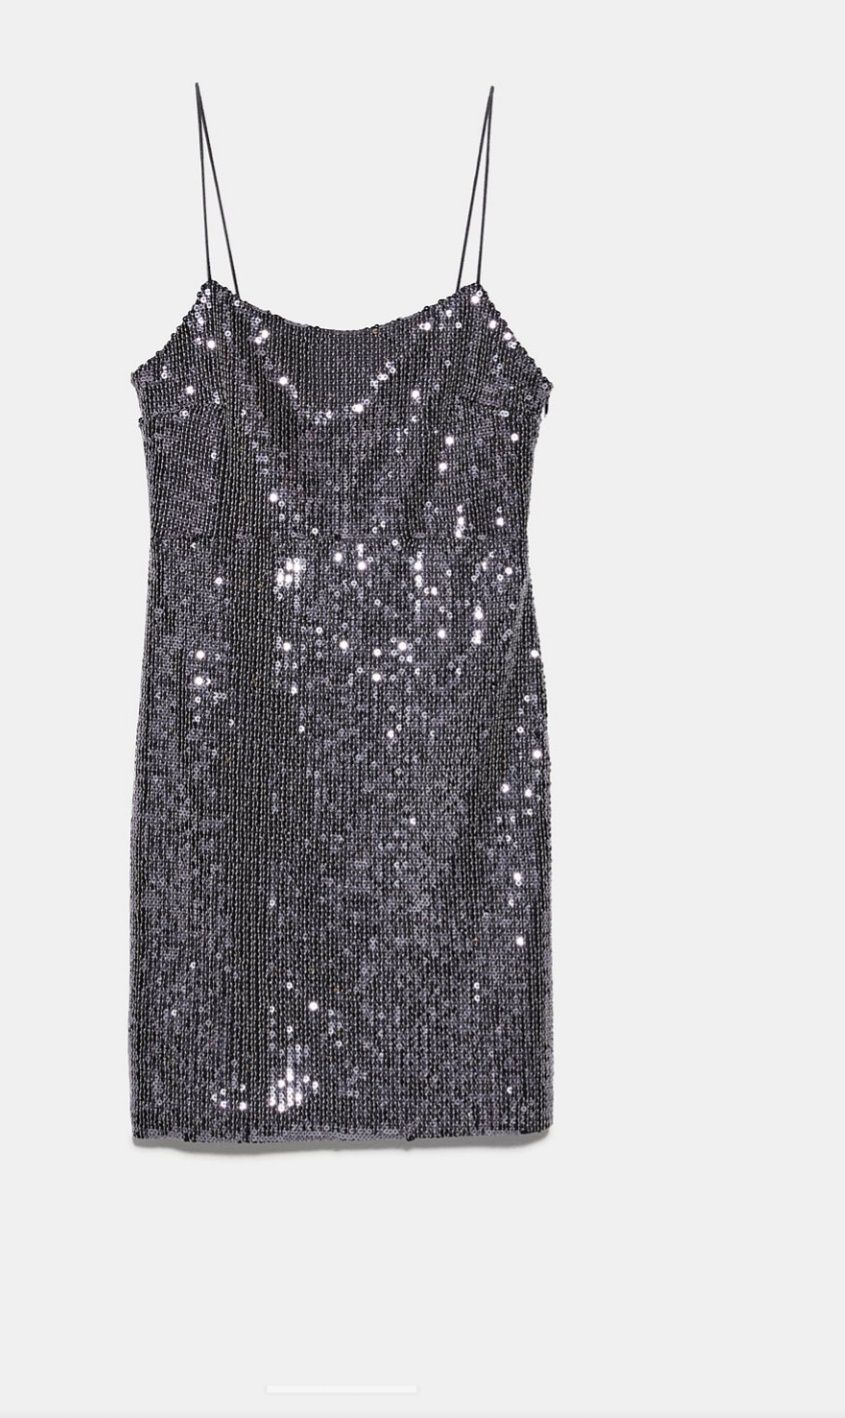 LUX Zara srebrne cekiny sukienka M wesele  wieczorowa sylwester